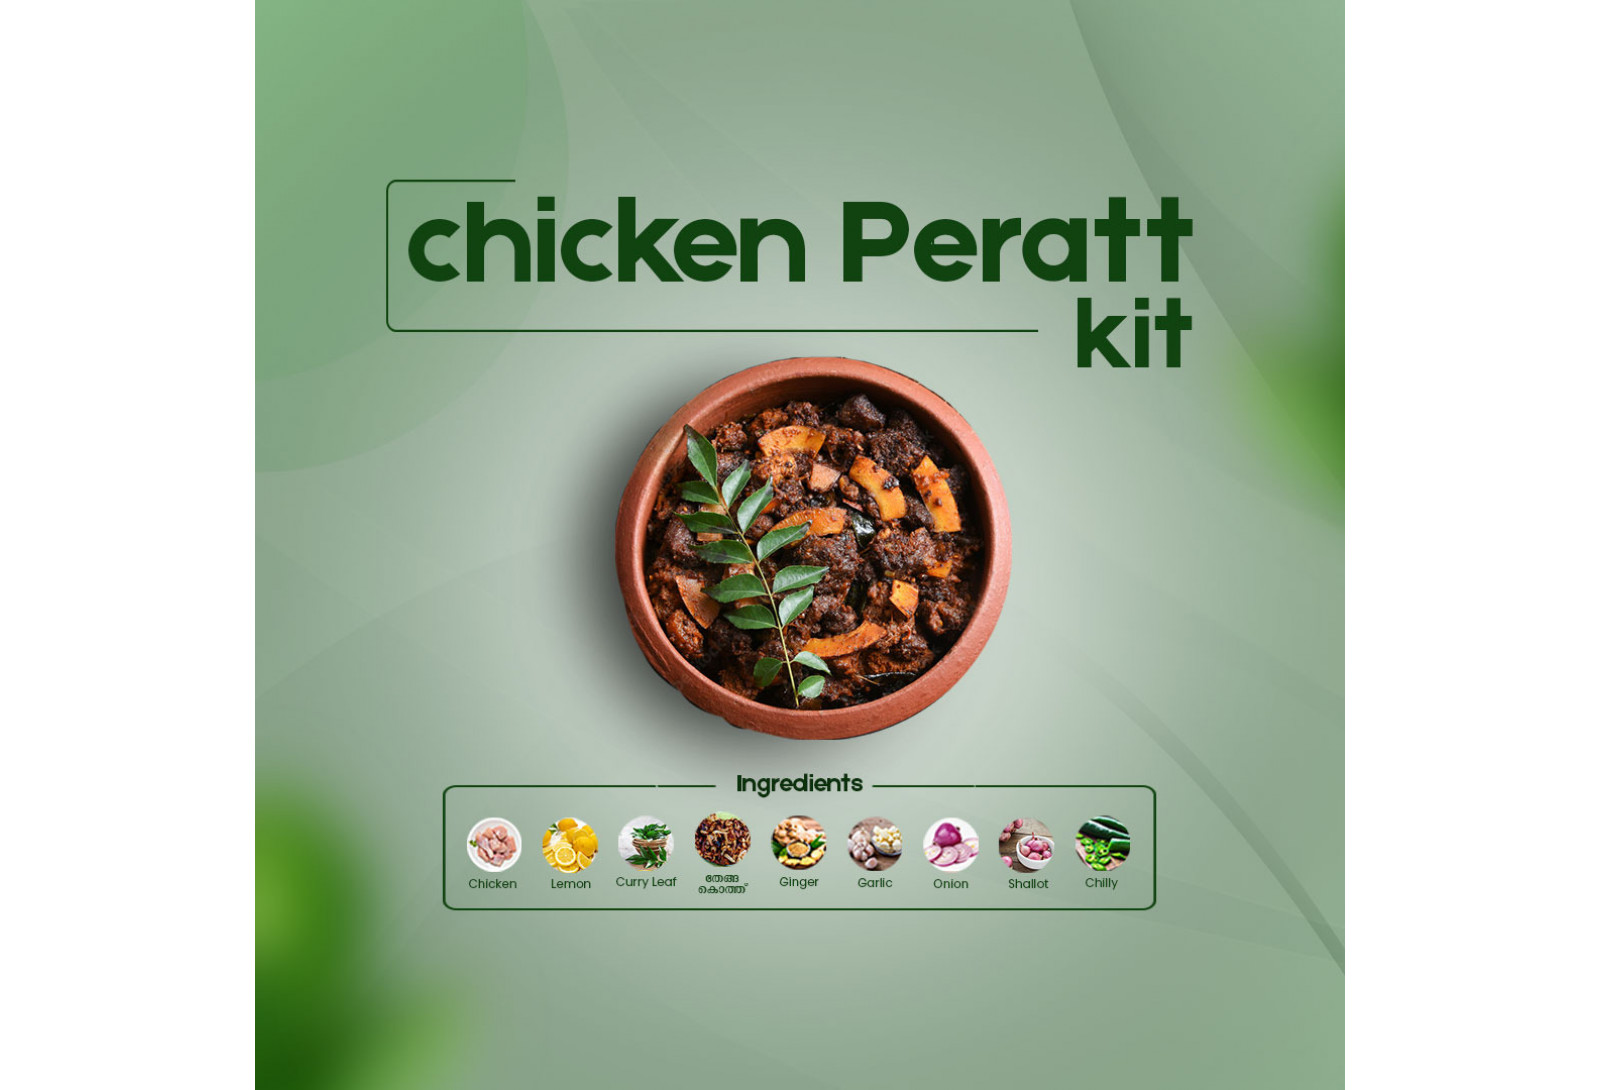 Instant Chicken Peratt Kit